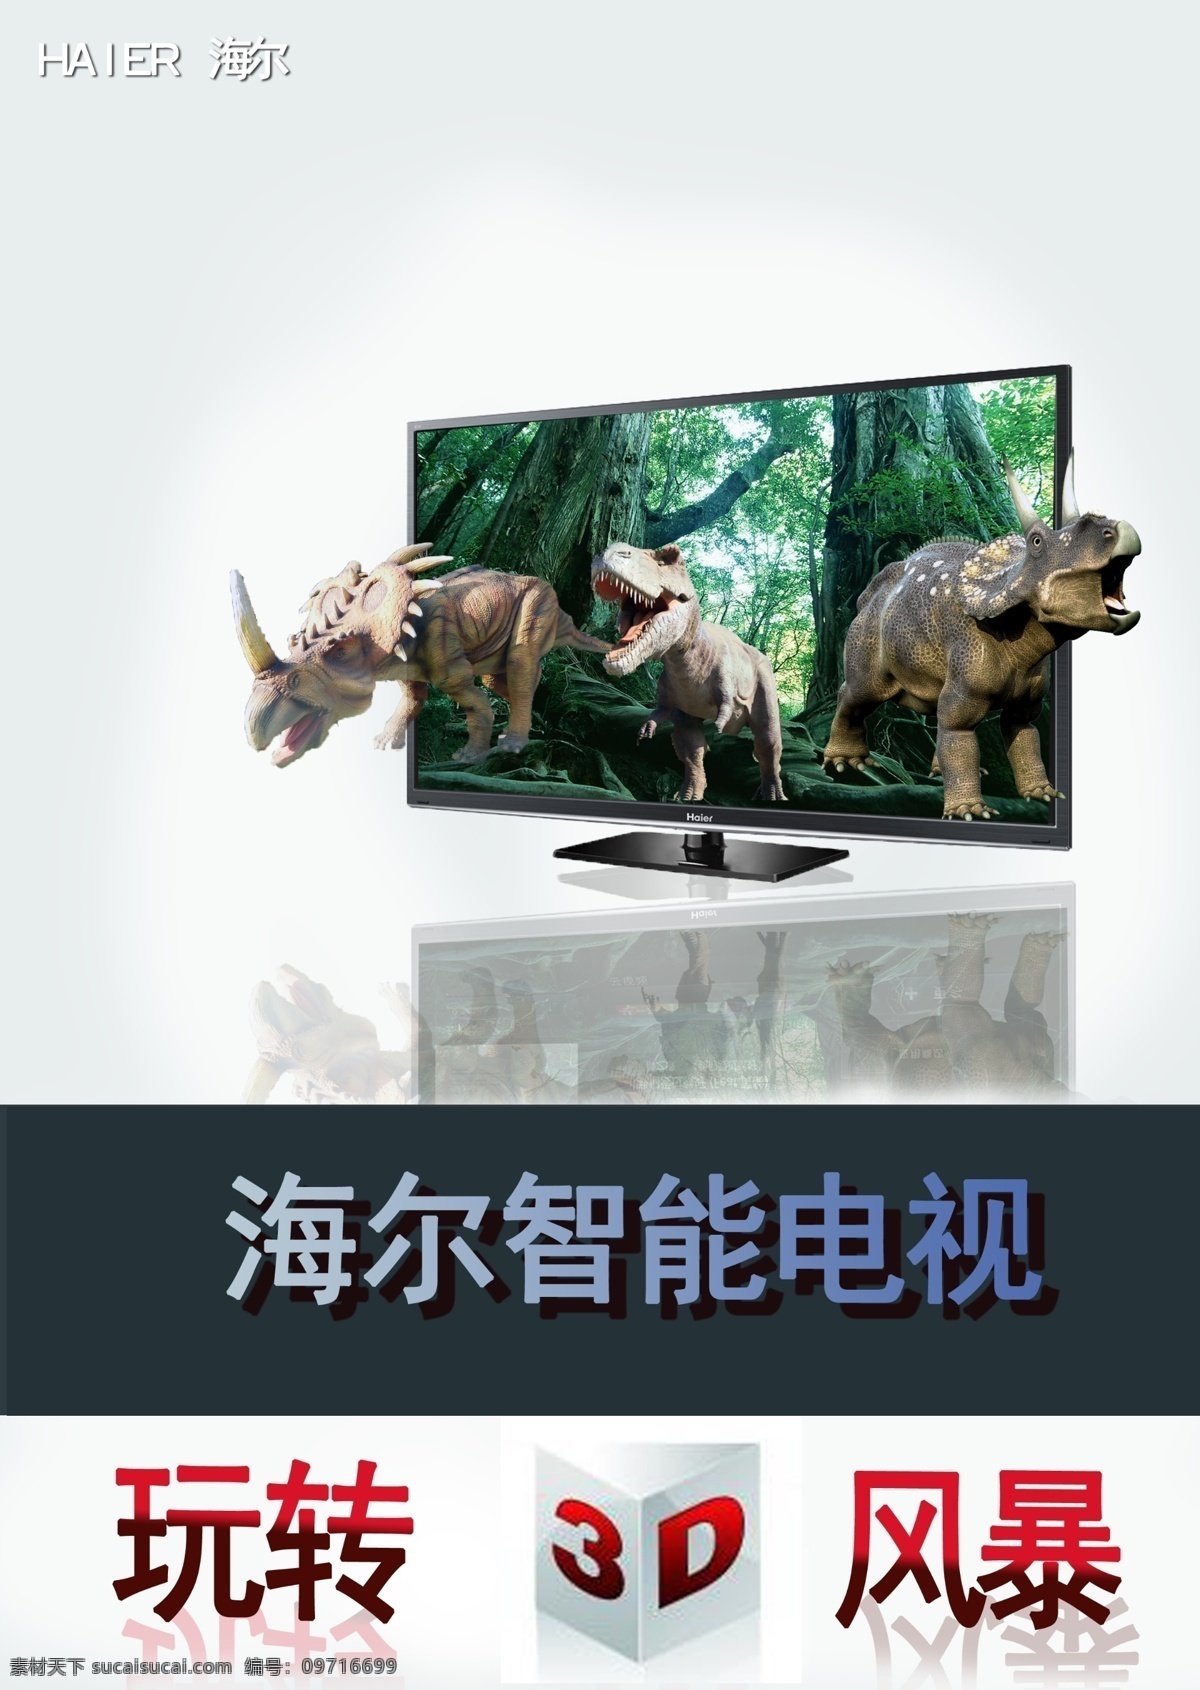 海尔 电视机 广告 海尔电视机 恐龙 3d 电视广告 现代科技 数码产品